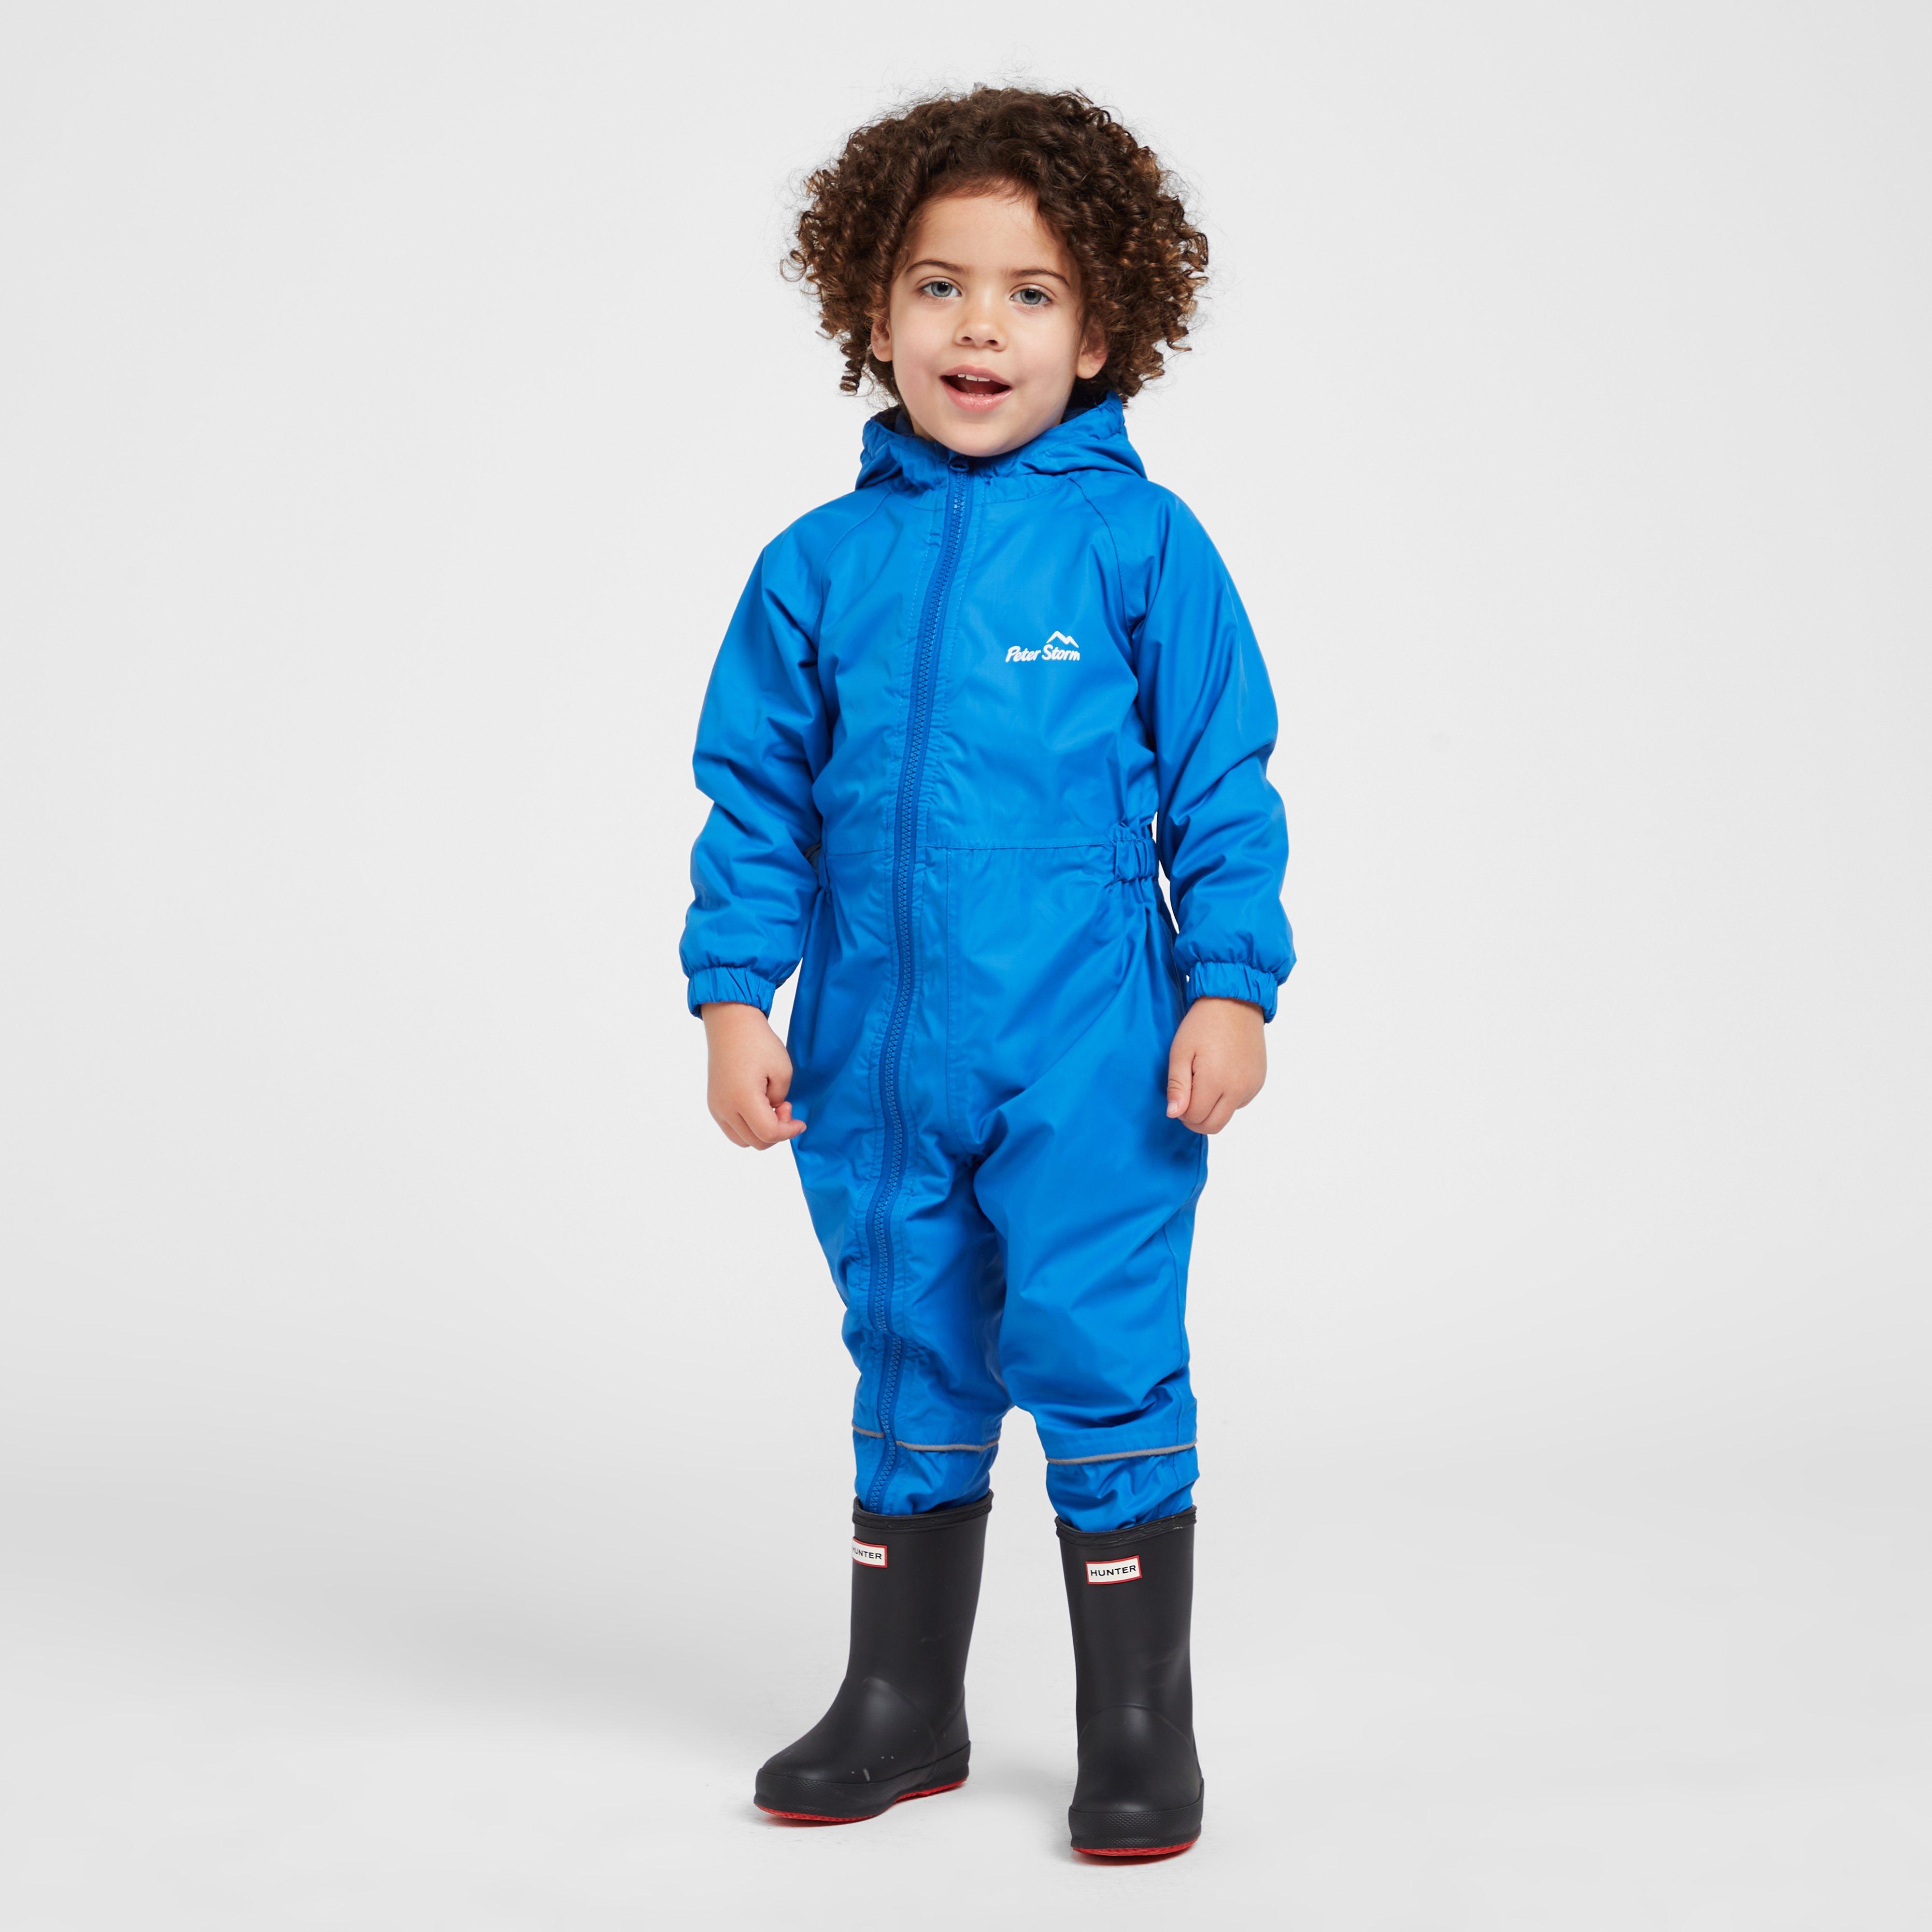 Peter Storm Infants Fleece Lined Waterproof Suit - Blue/dbl  Blue/dbl